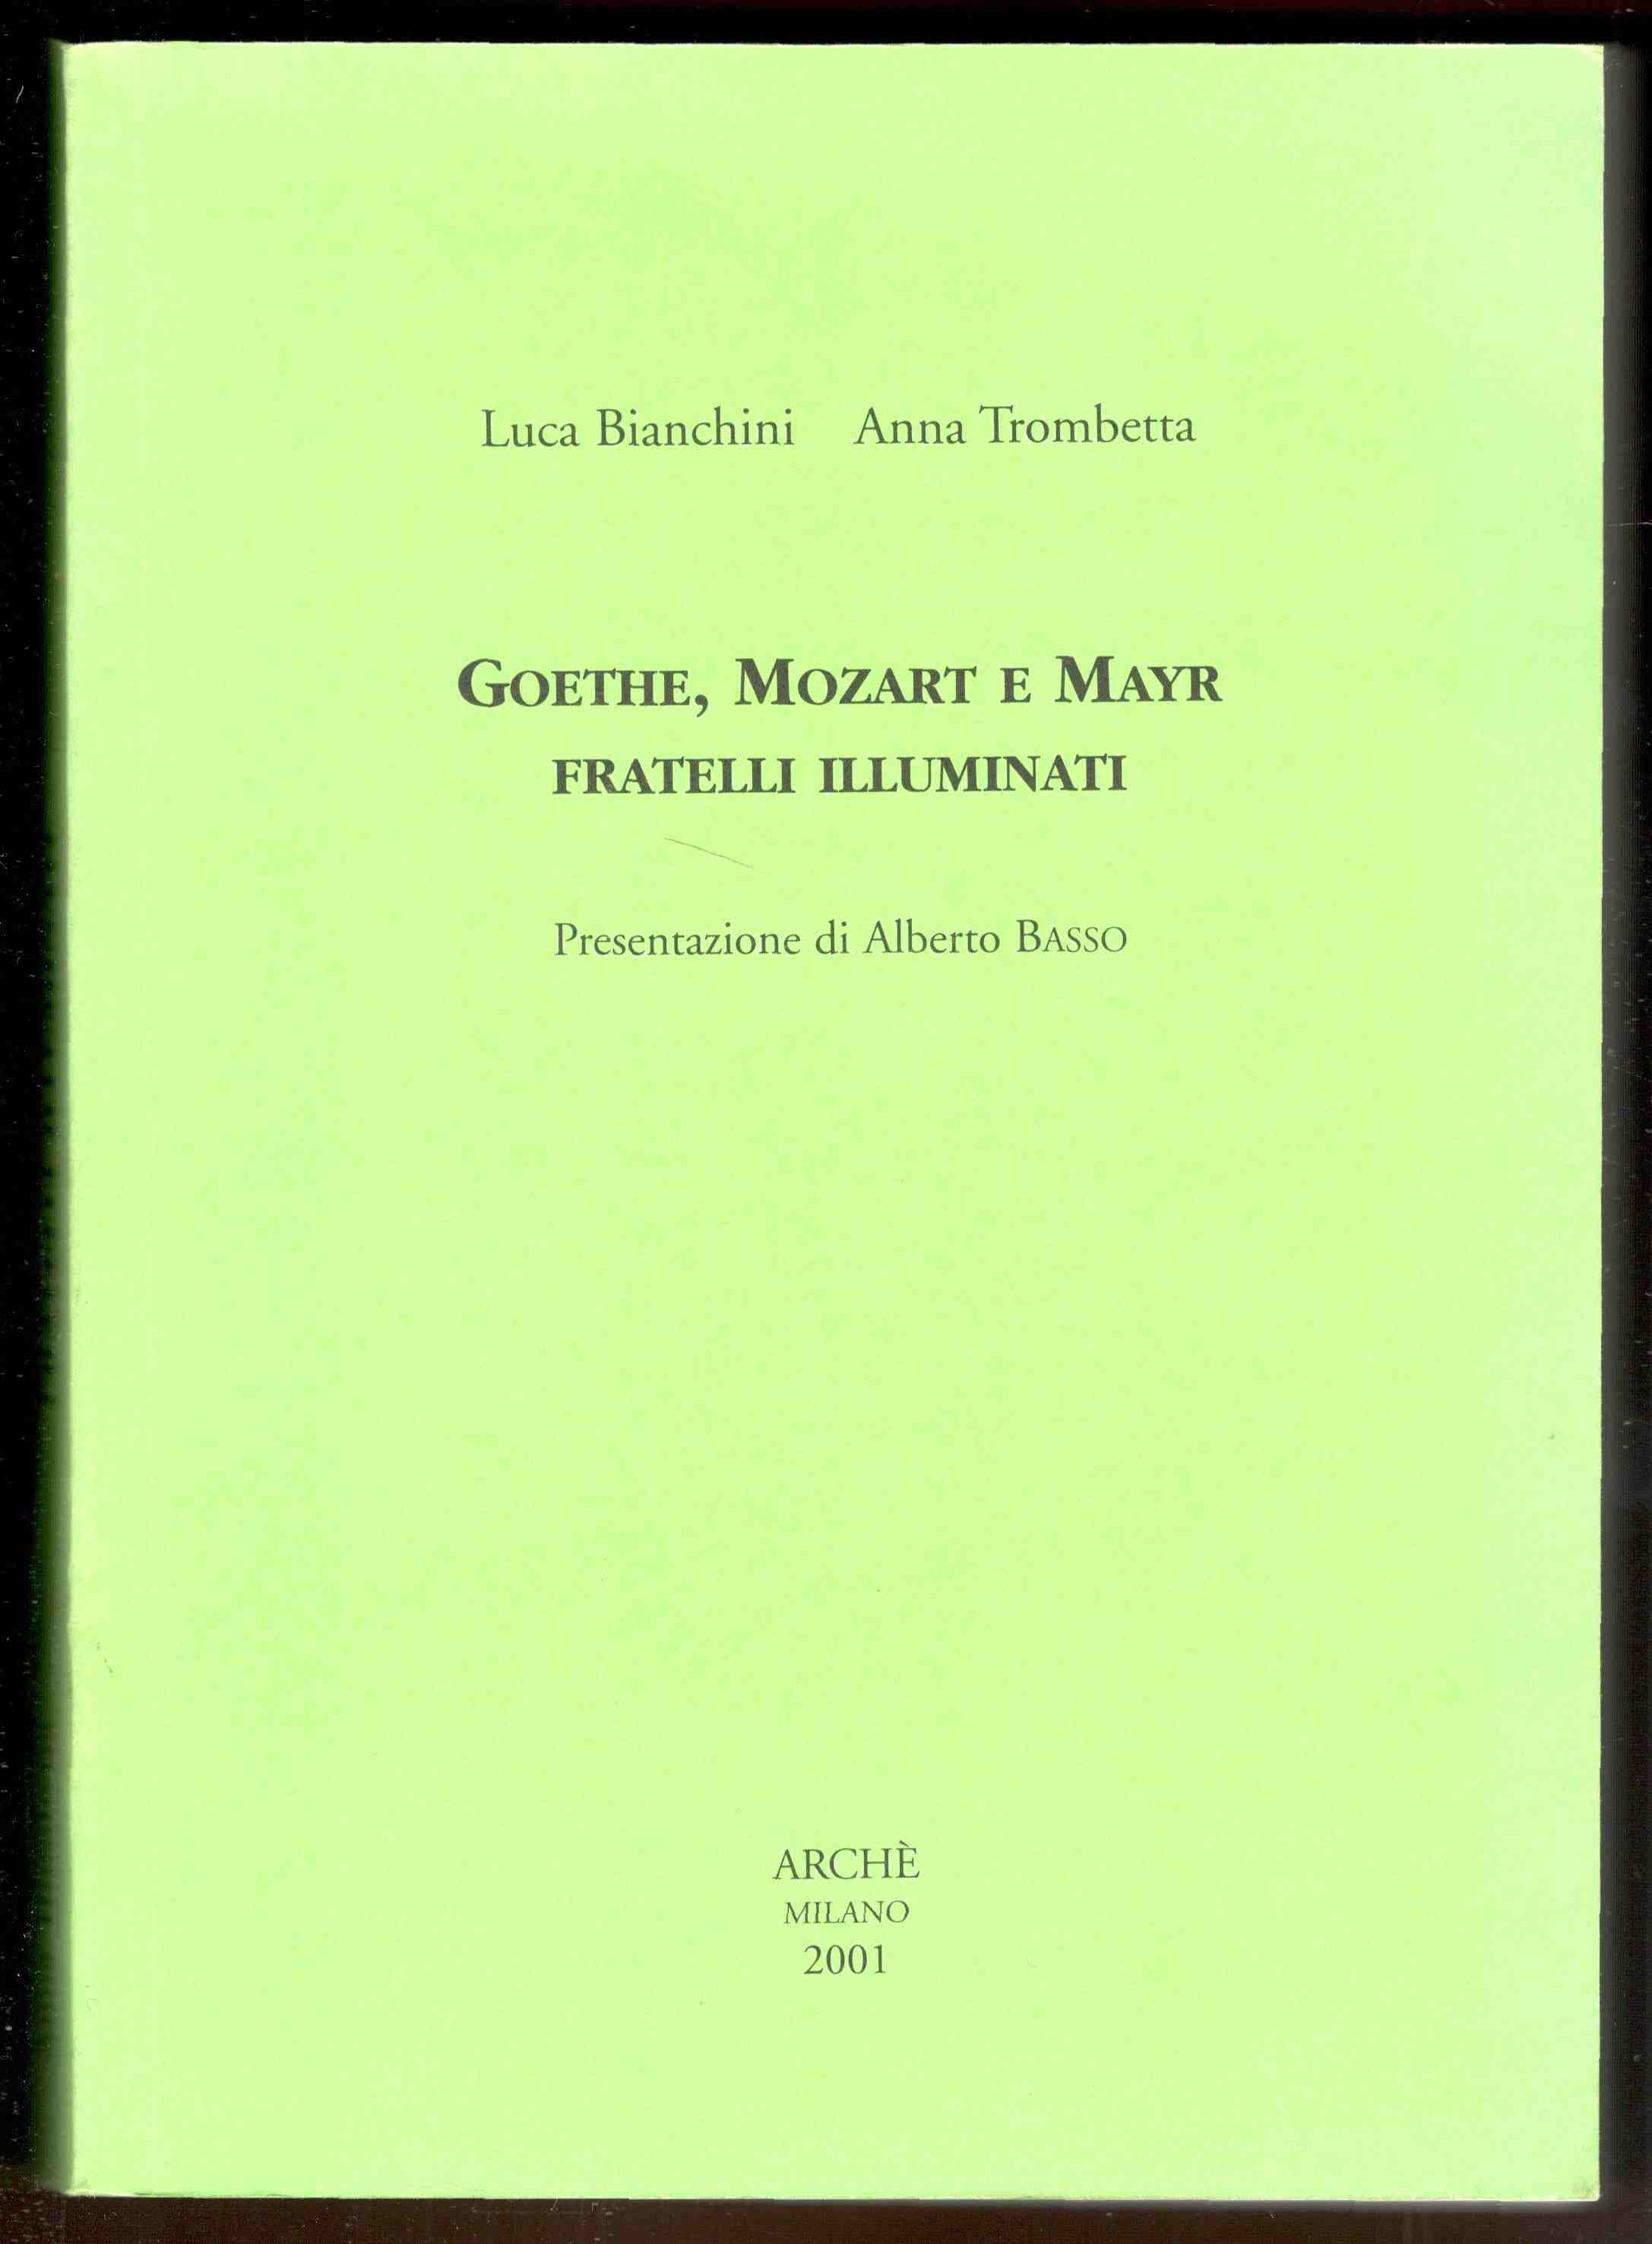 Goethe, Mozart e Mayr fratelli illuminati. Prefazione di Alberto Basso